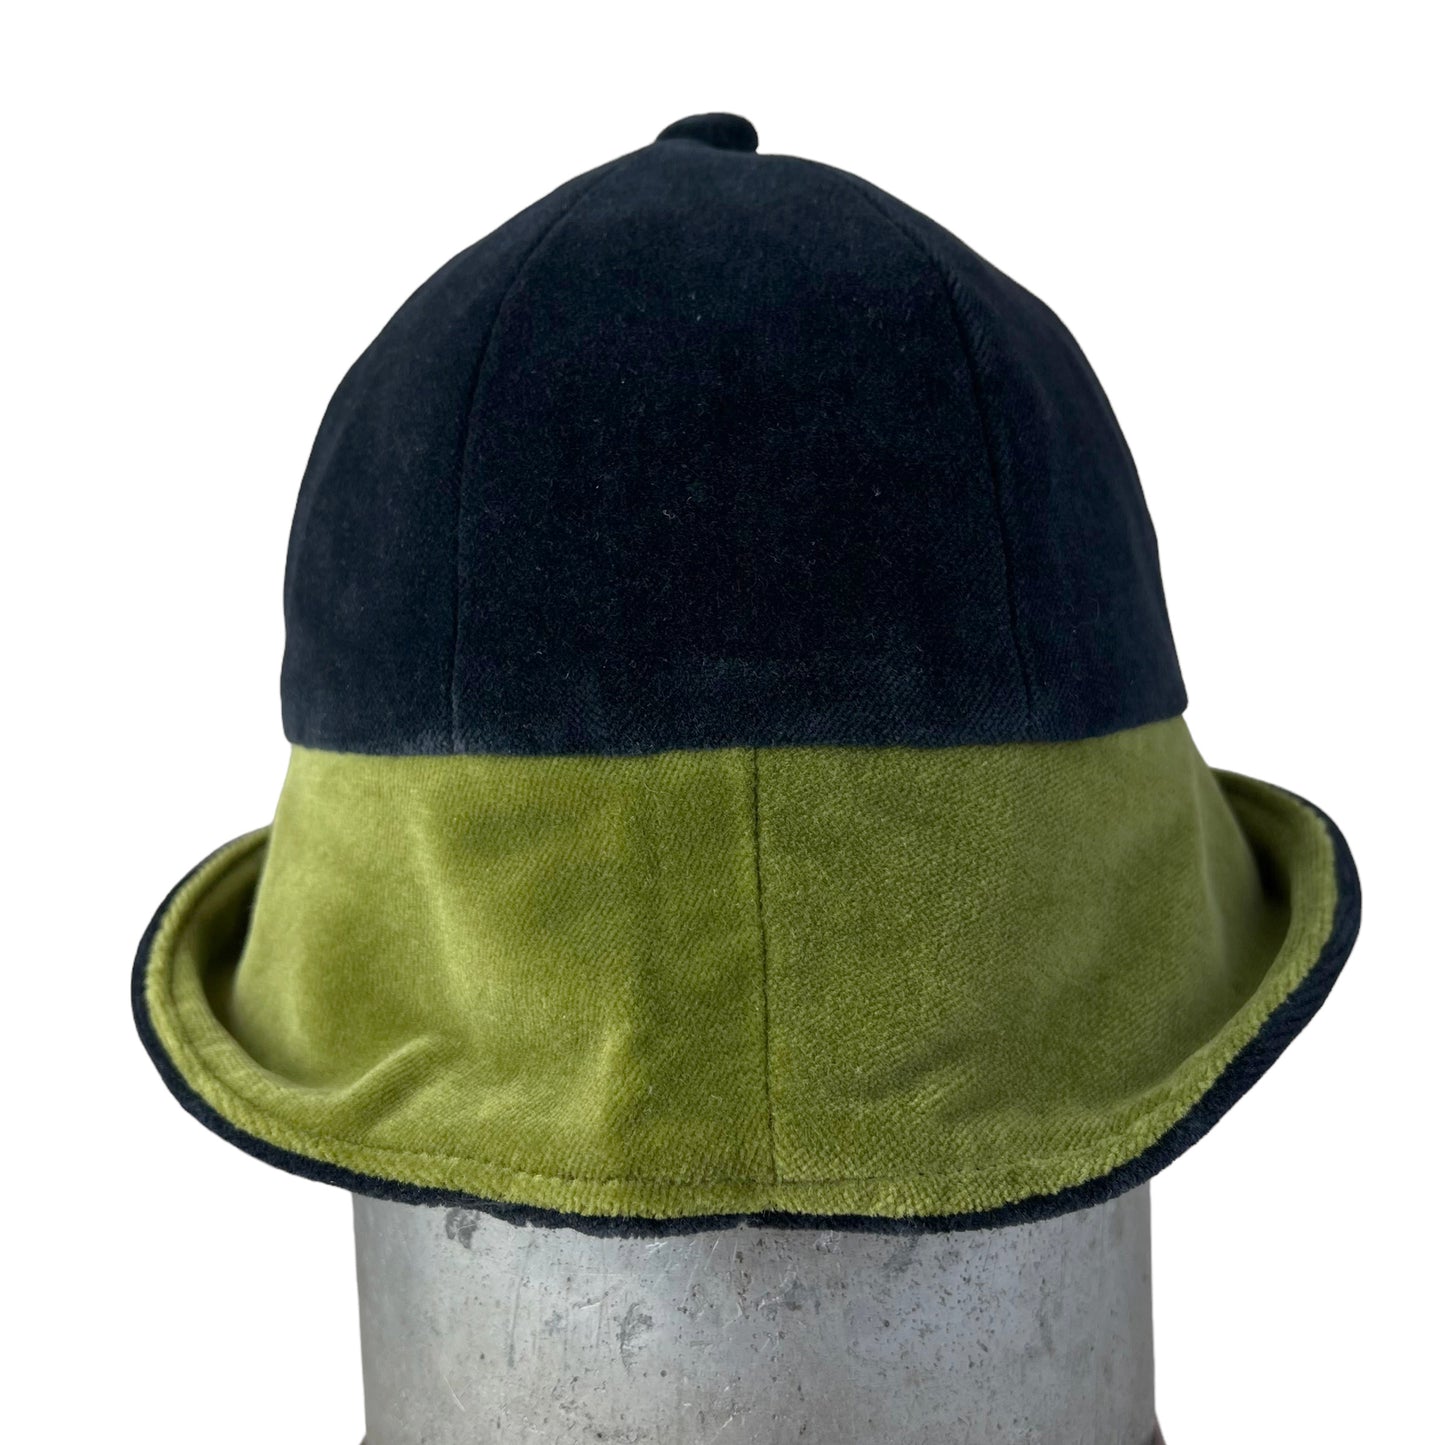 Cotton Velvet Rim Hat X Small Black Lime Green